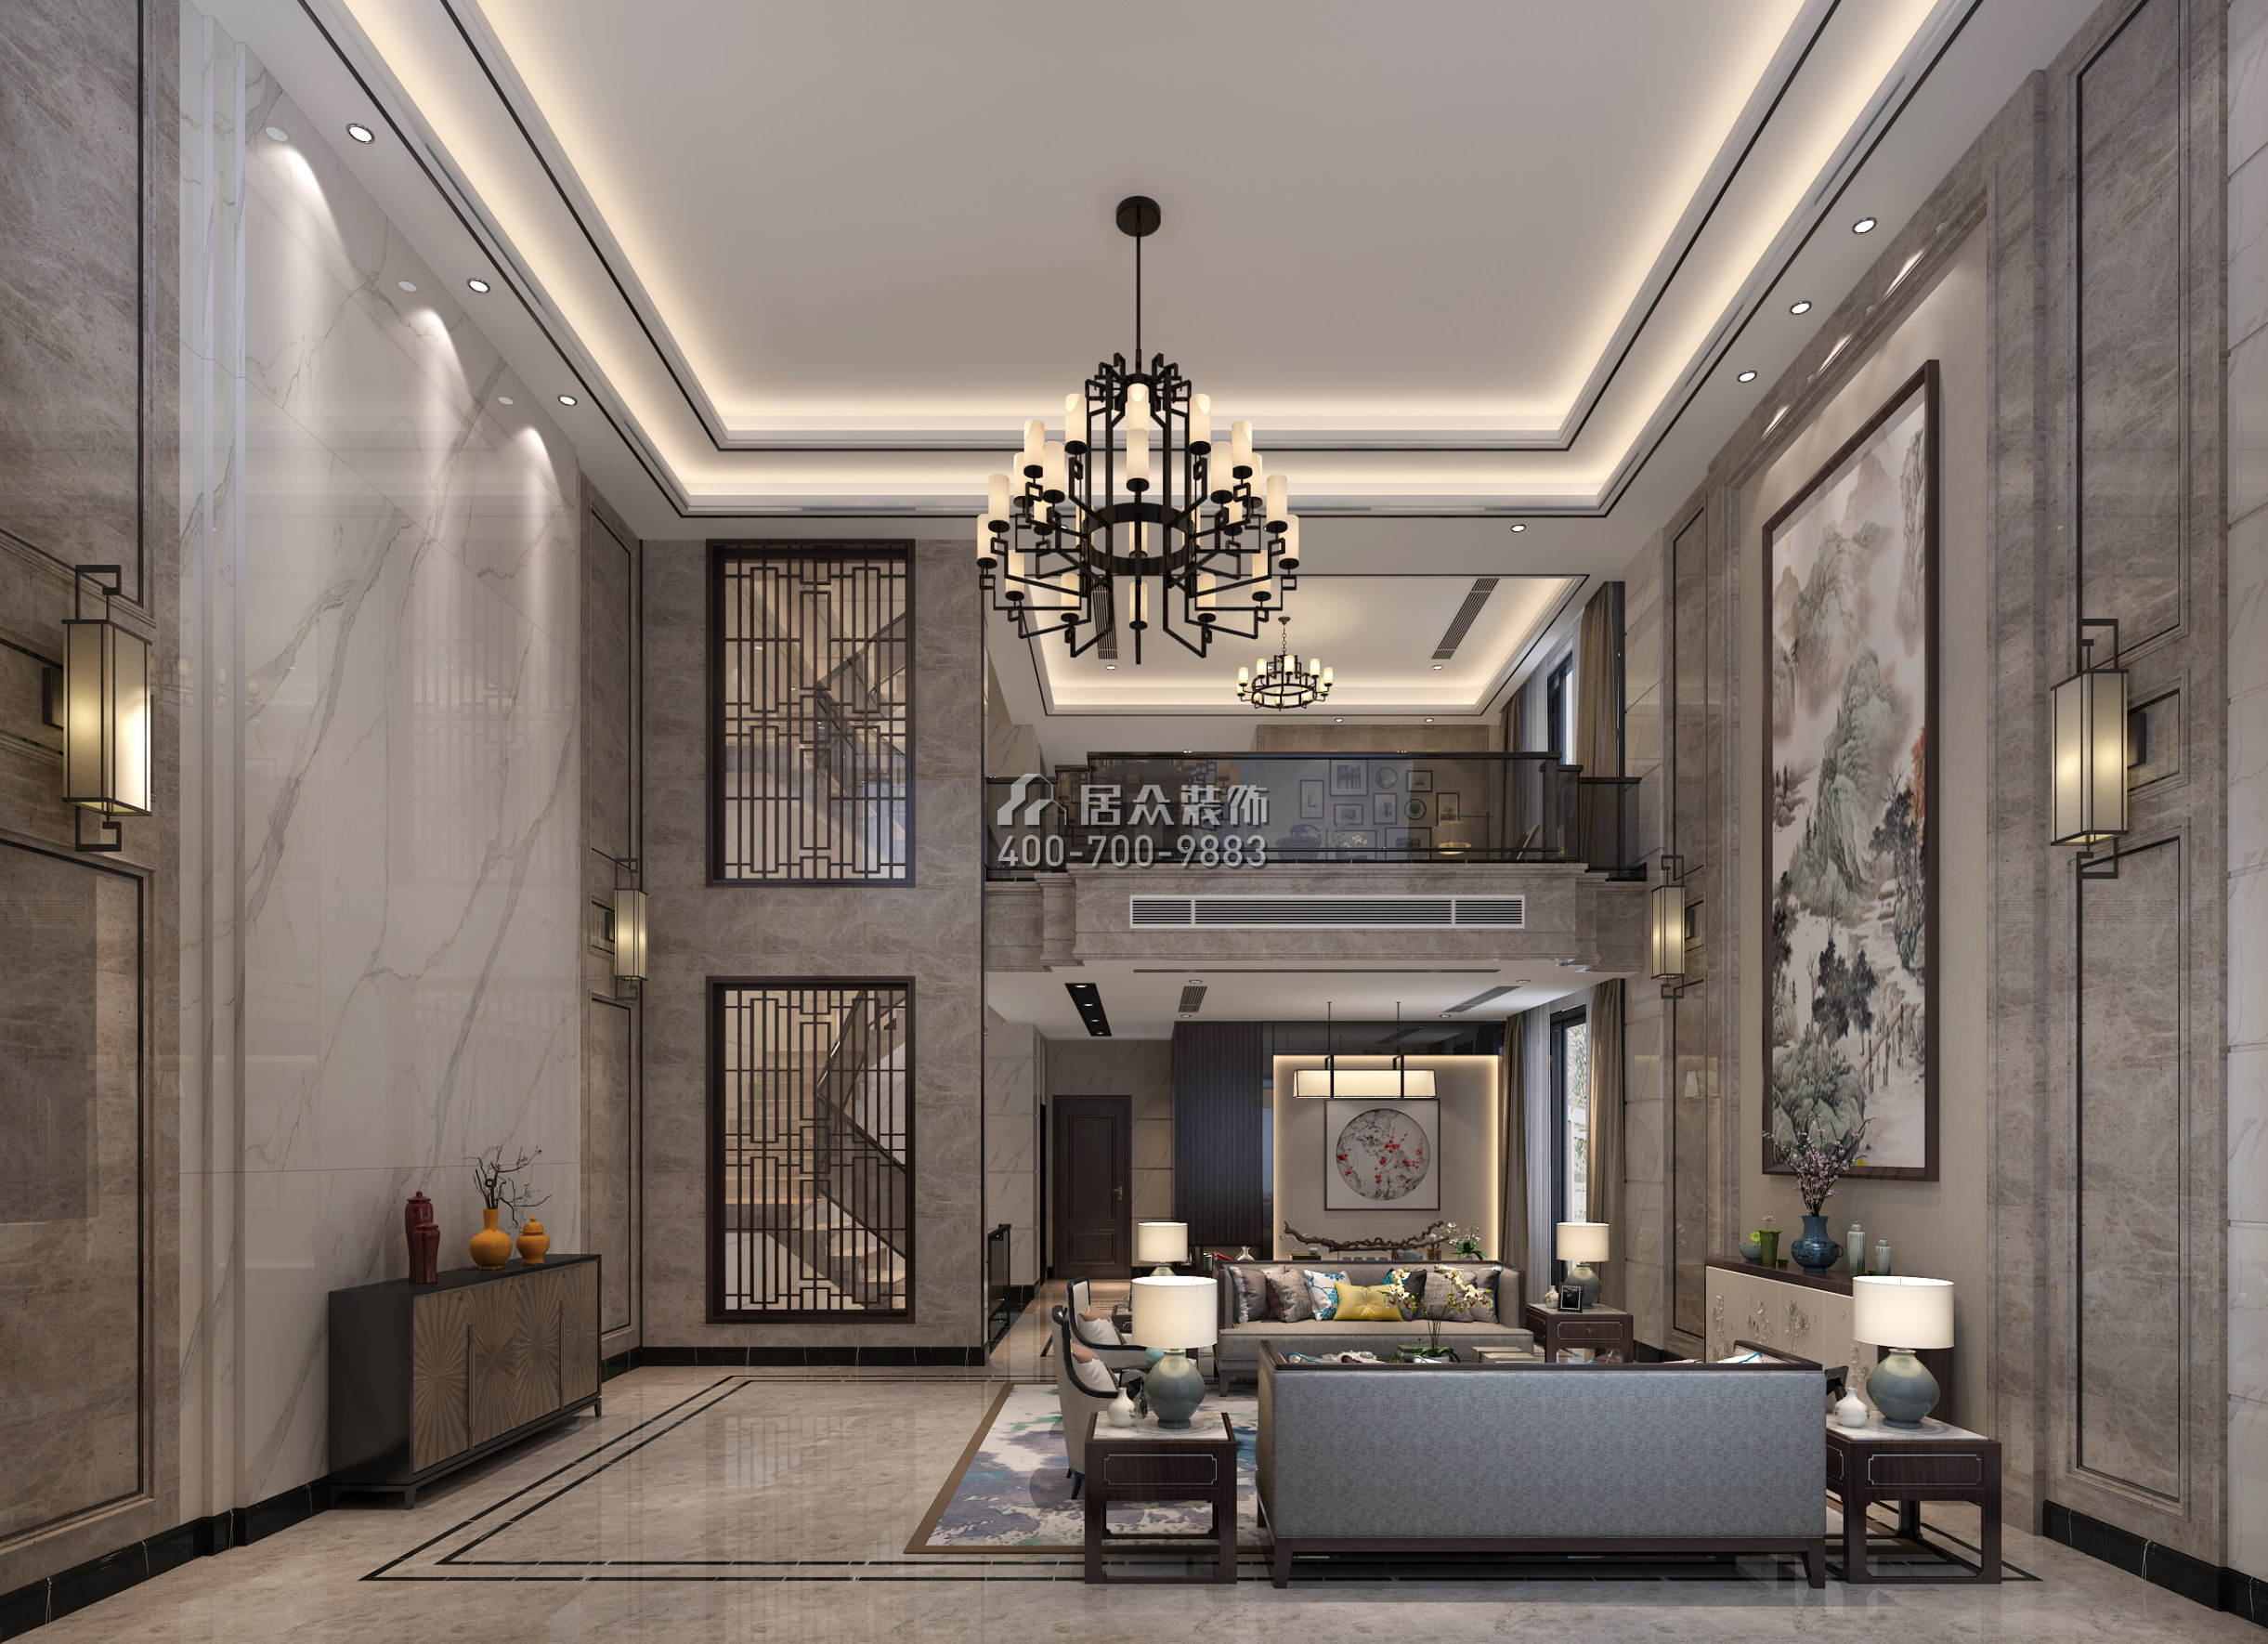 華僑城天鵝湖650平方米中式風格別墅戶型客廳裝修效果圖